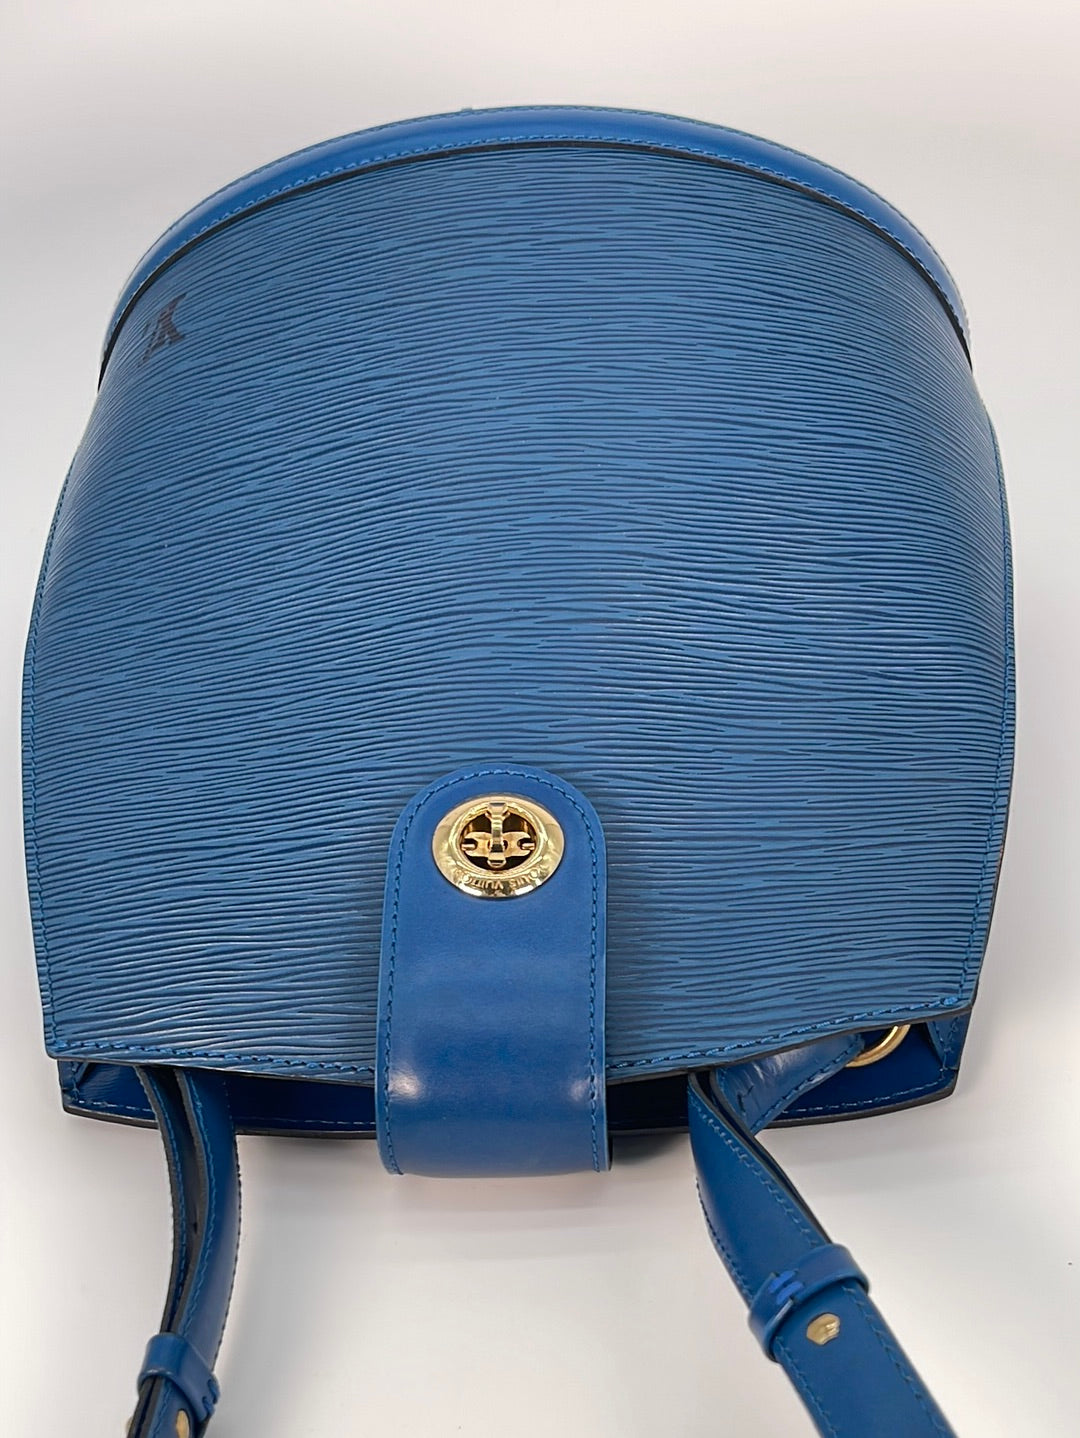 Preloved Louis Vuitton Cluny Shoulder Bag Blue Epi Leather VI0955 032923 *** Lightening Deal Apr 18 ***